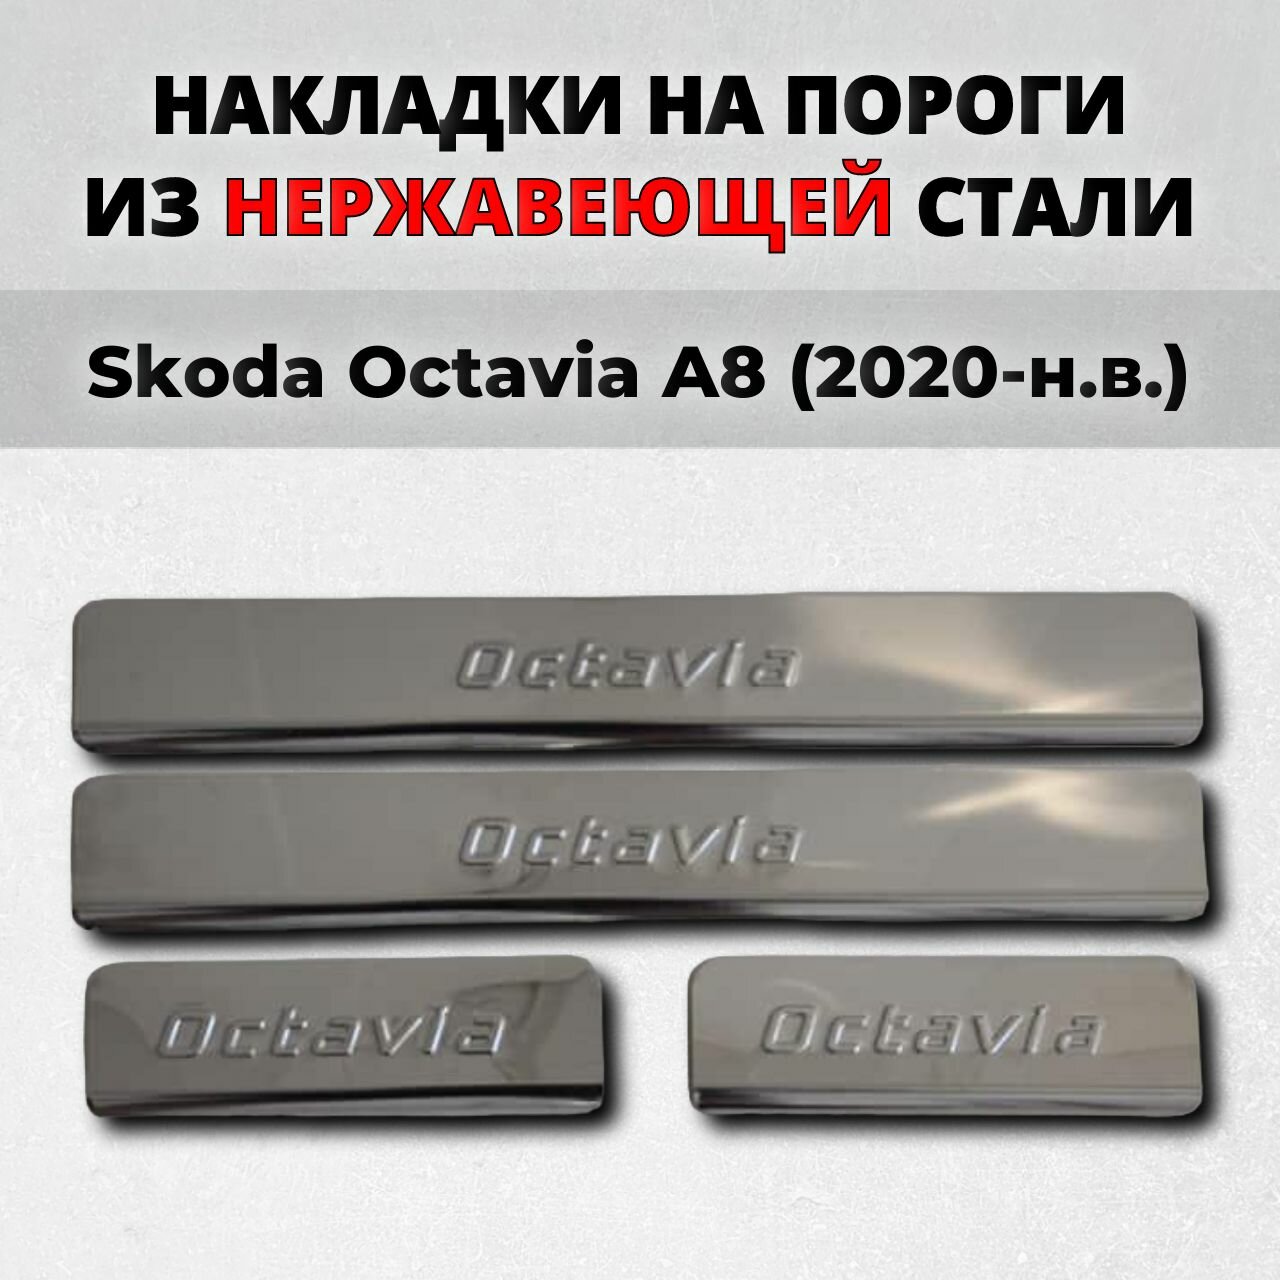 Накладки на пороги Шкода Окатавия А8 2020-н. в. из нержавеющей стали SKODA Octavia A8